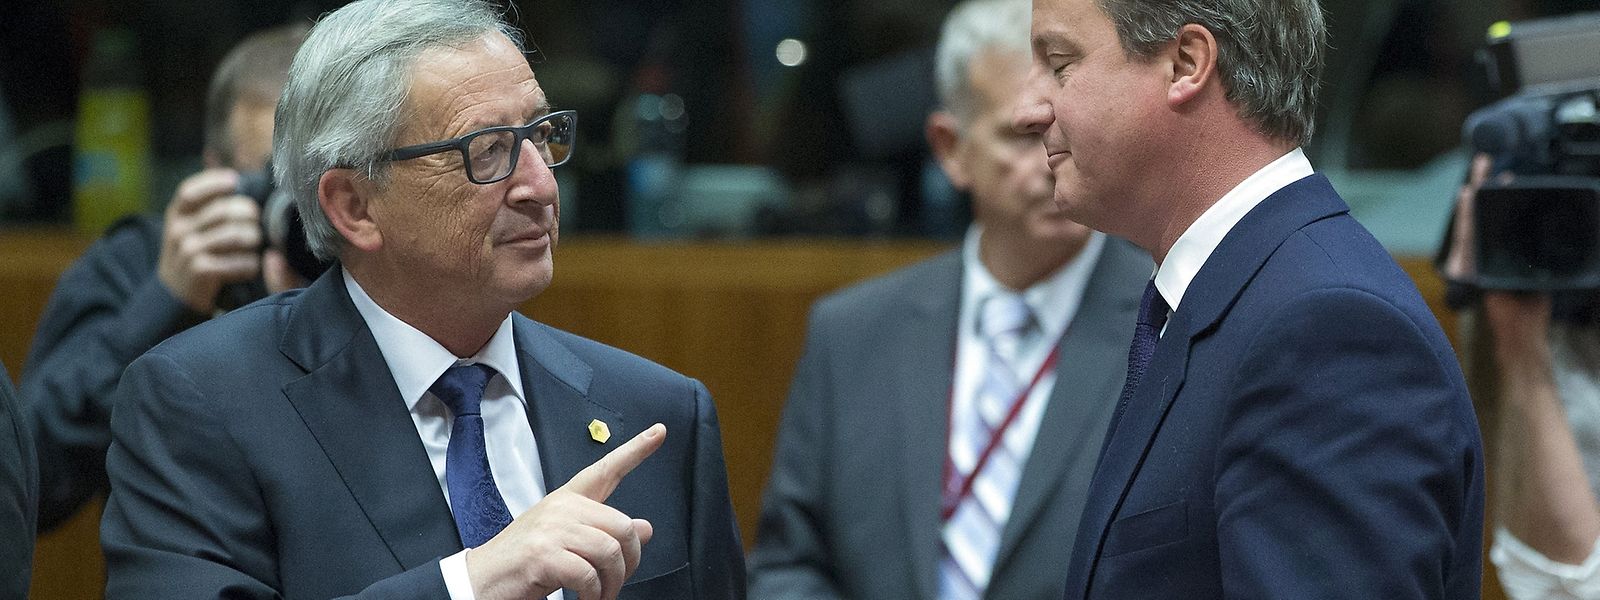 Le président de la Commission européenne, Jean-Claude Juncker, et le Premier ministre britannique, David Cameron, mercredi 23 septembre à Bruxelles